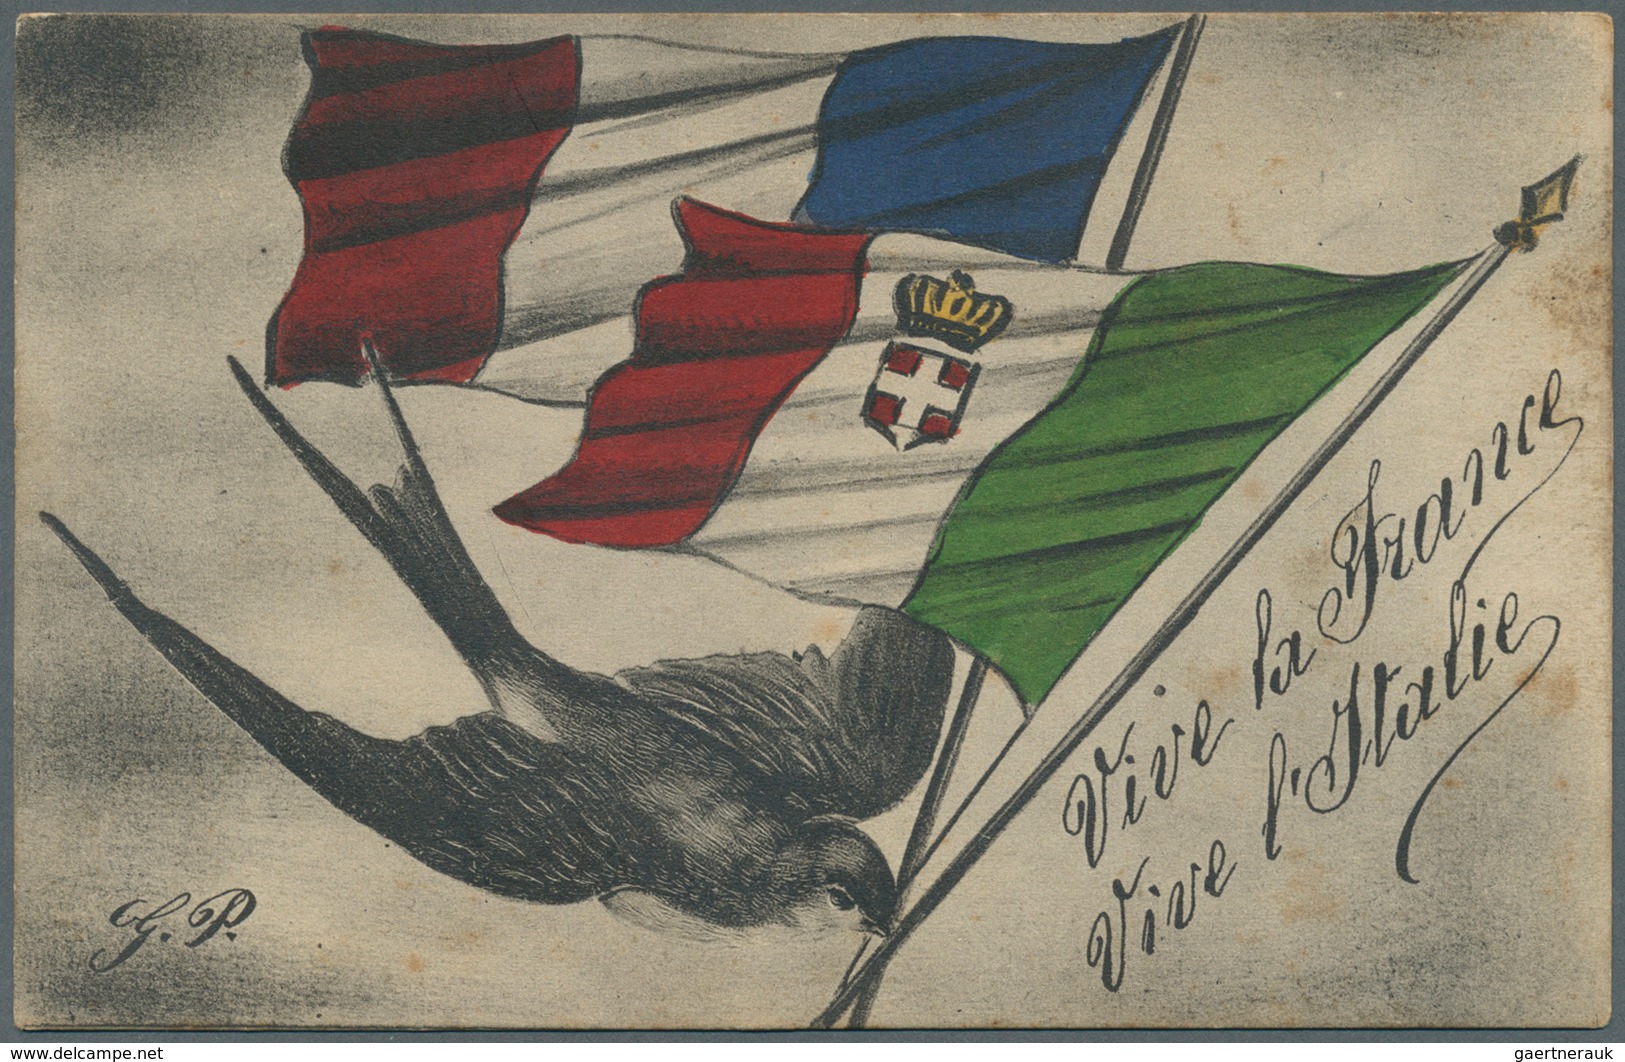 Ansichtskarten: Motive / Thematics: 1. WELTKRIEG, Französische Sammlung "Dirigeants Allies" (Die Ver - Other & Unclassified